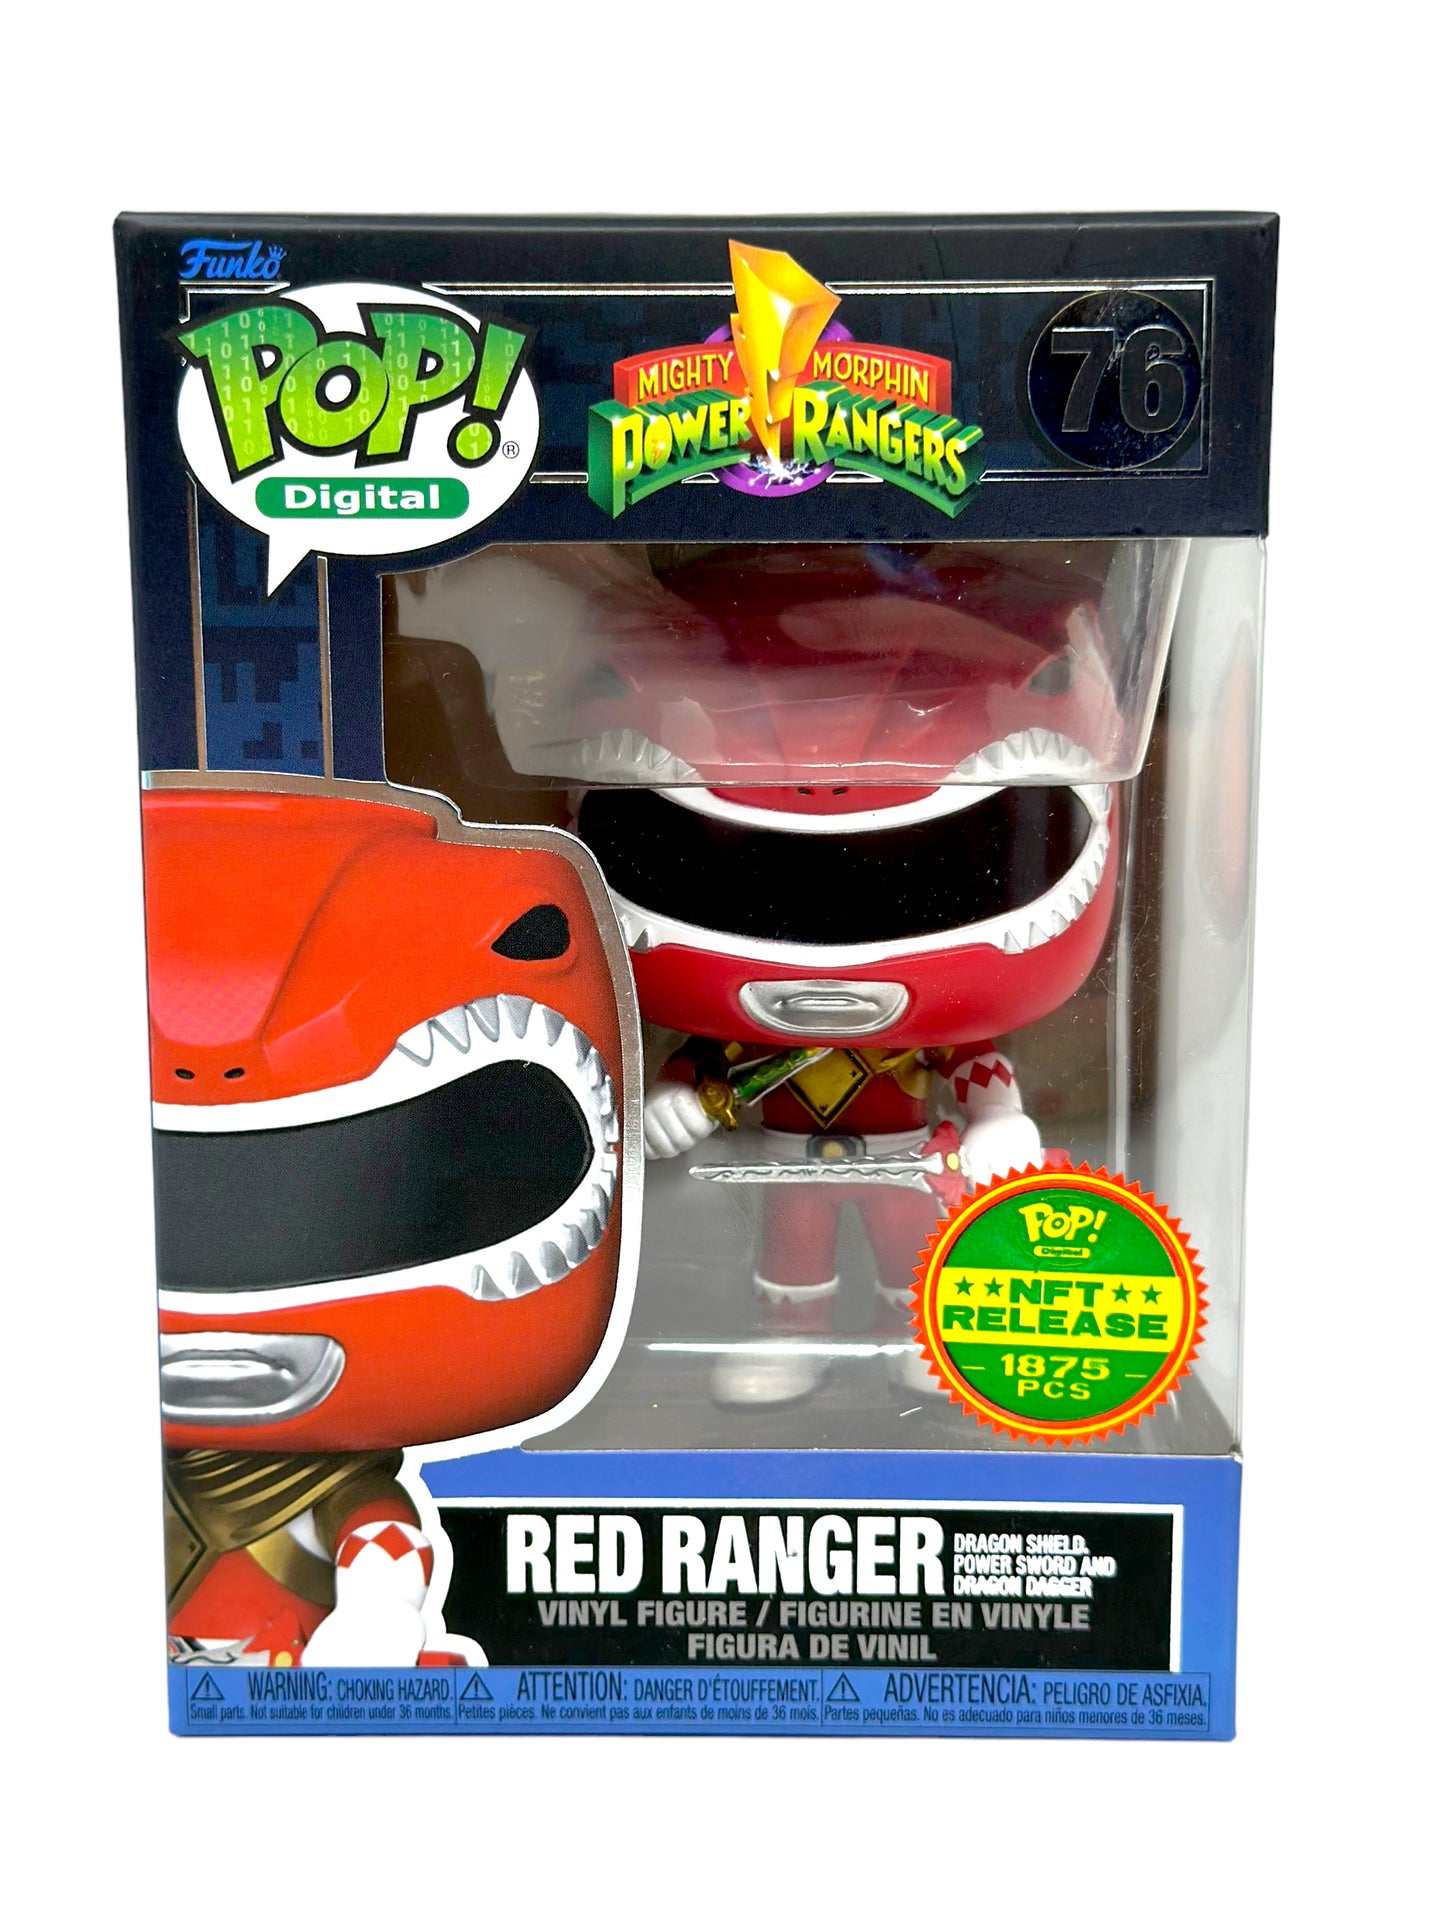 Sold 2022 NFT Red Ranger 76 LE 1875